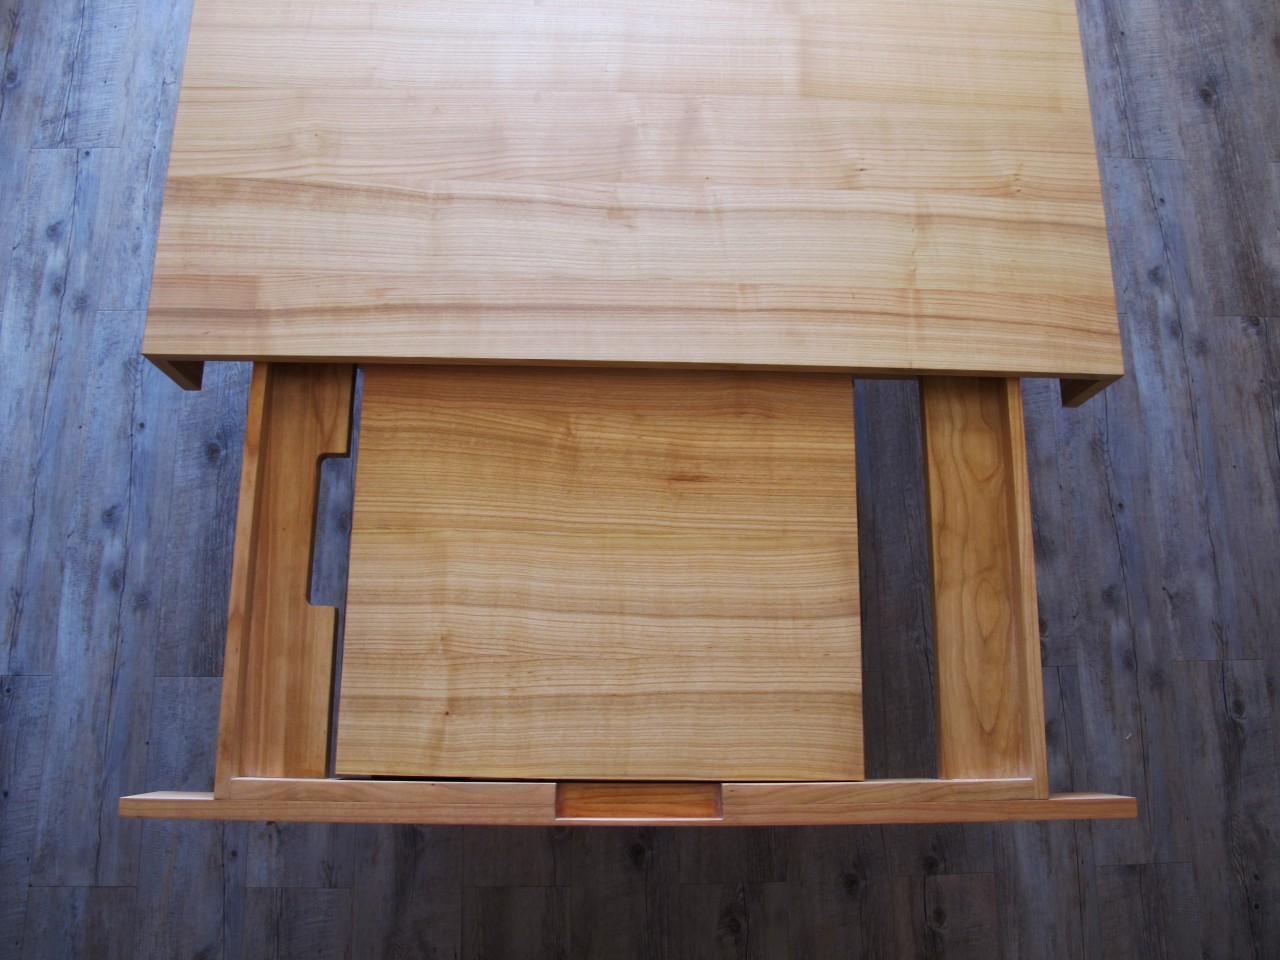 La longueur du plateau de la table peut être rallongée de 50cm par l'intermédiaire des rallonges rangées dans des tiroirs en bout de table.